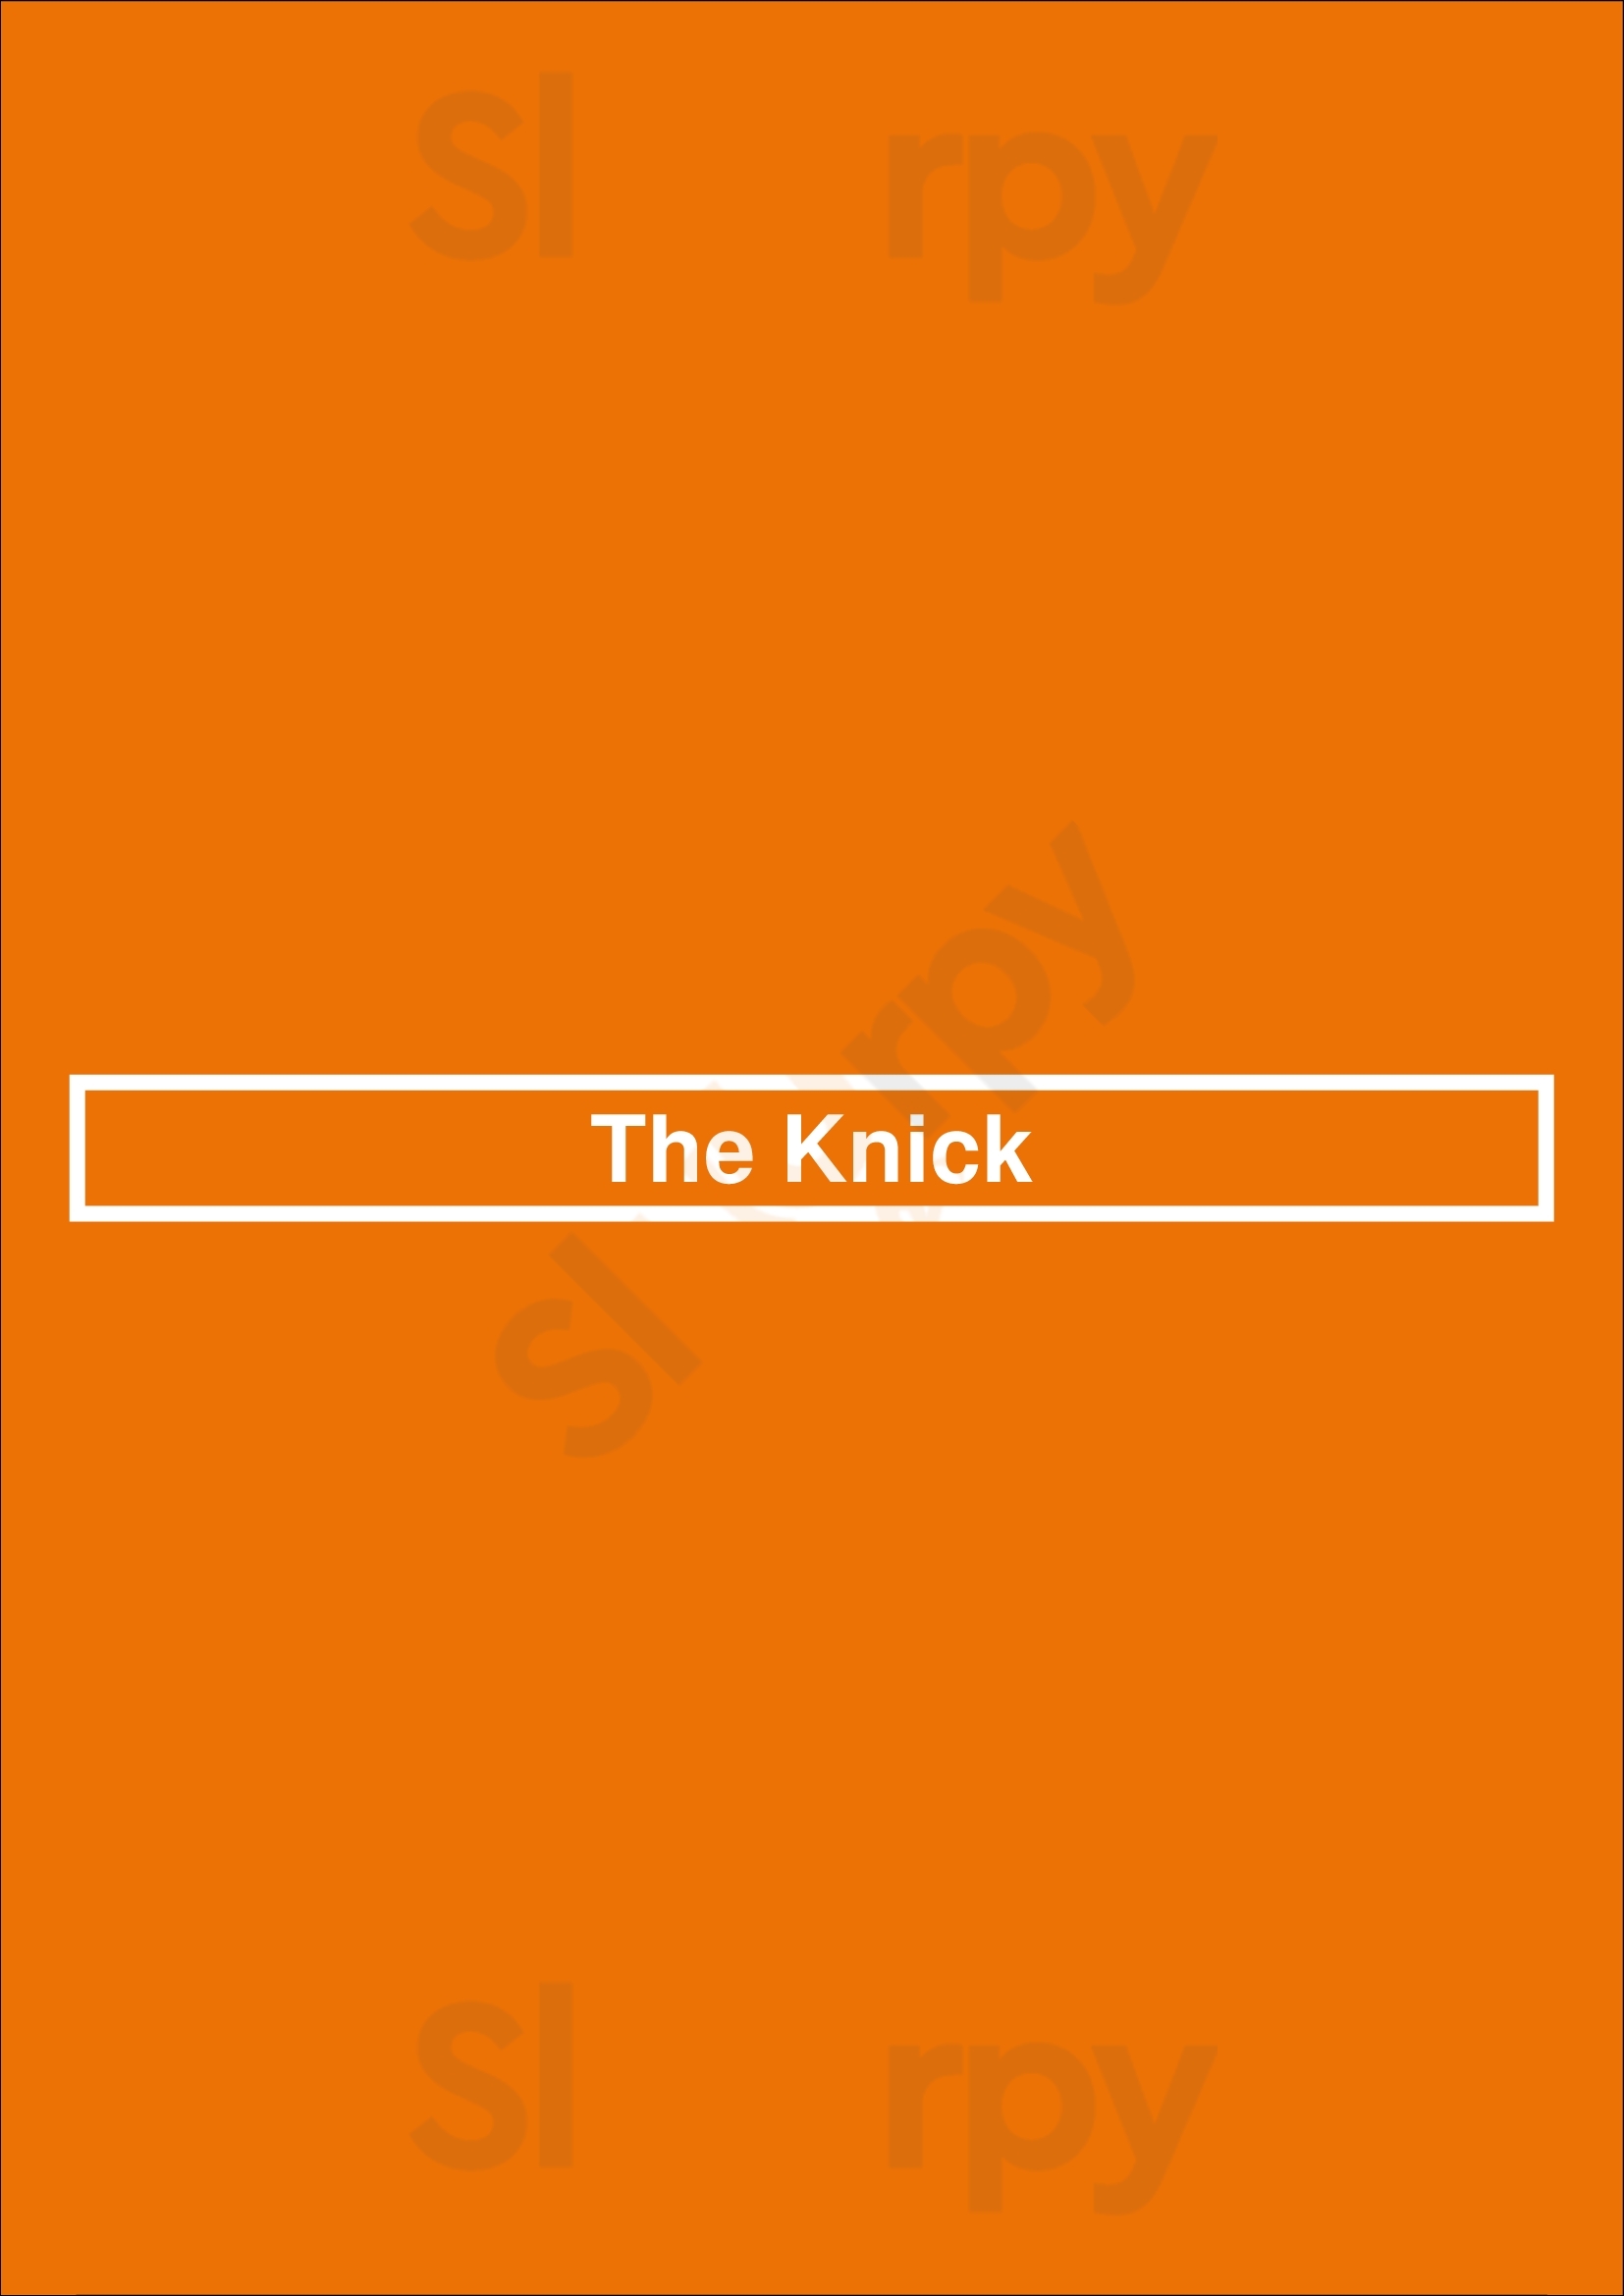 The Knick Milwaukee Menu - 1